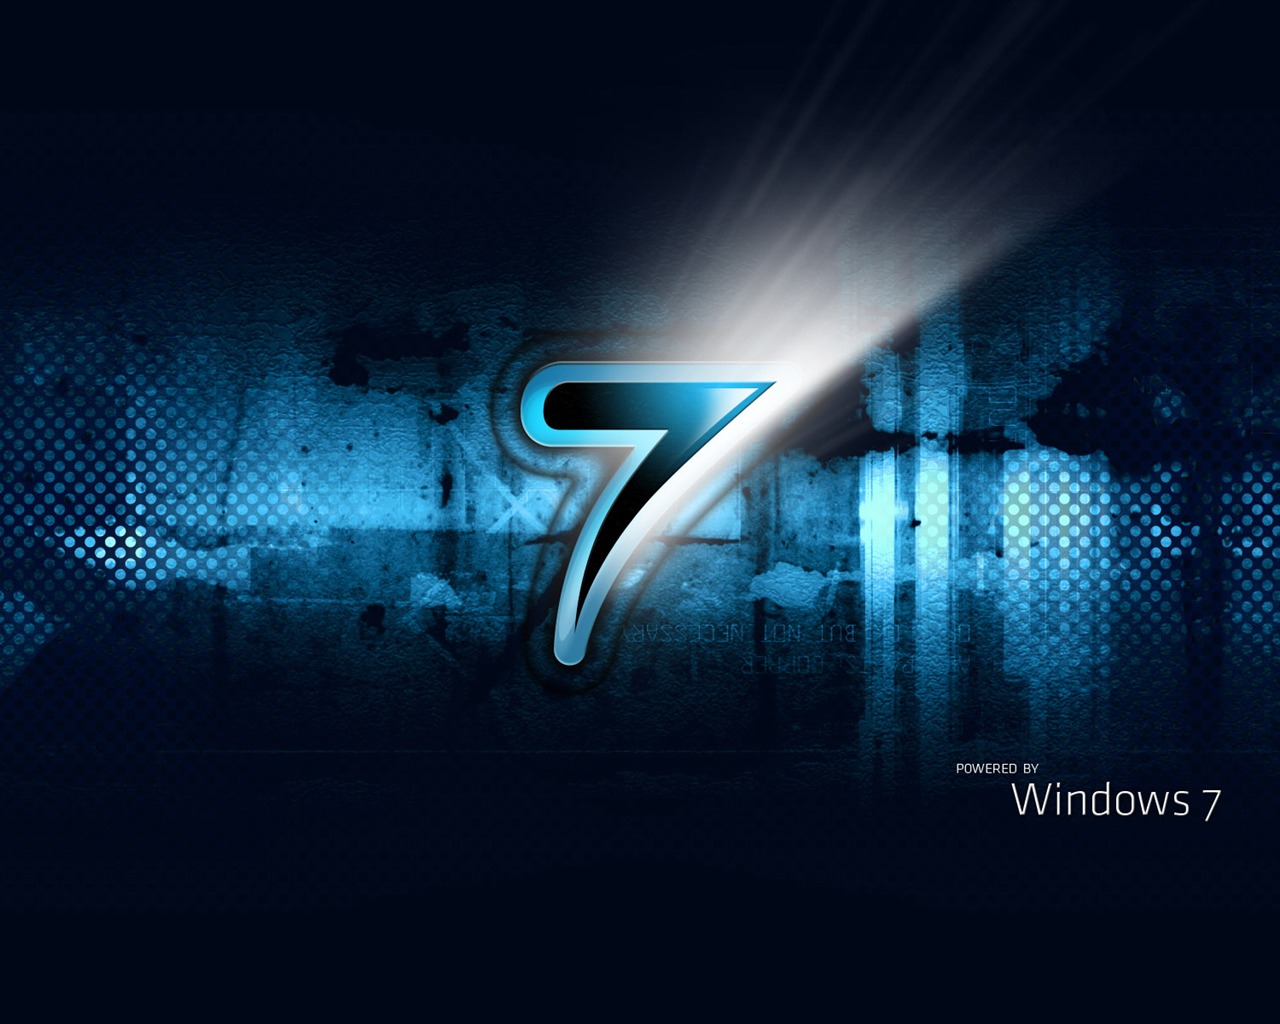 Windows7 theme wallpaper (2) #8 - 1280x1024